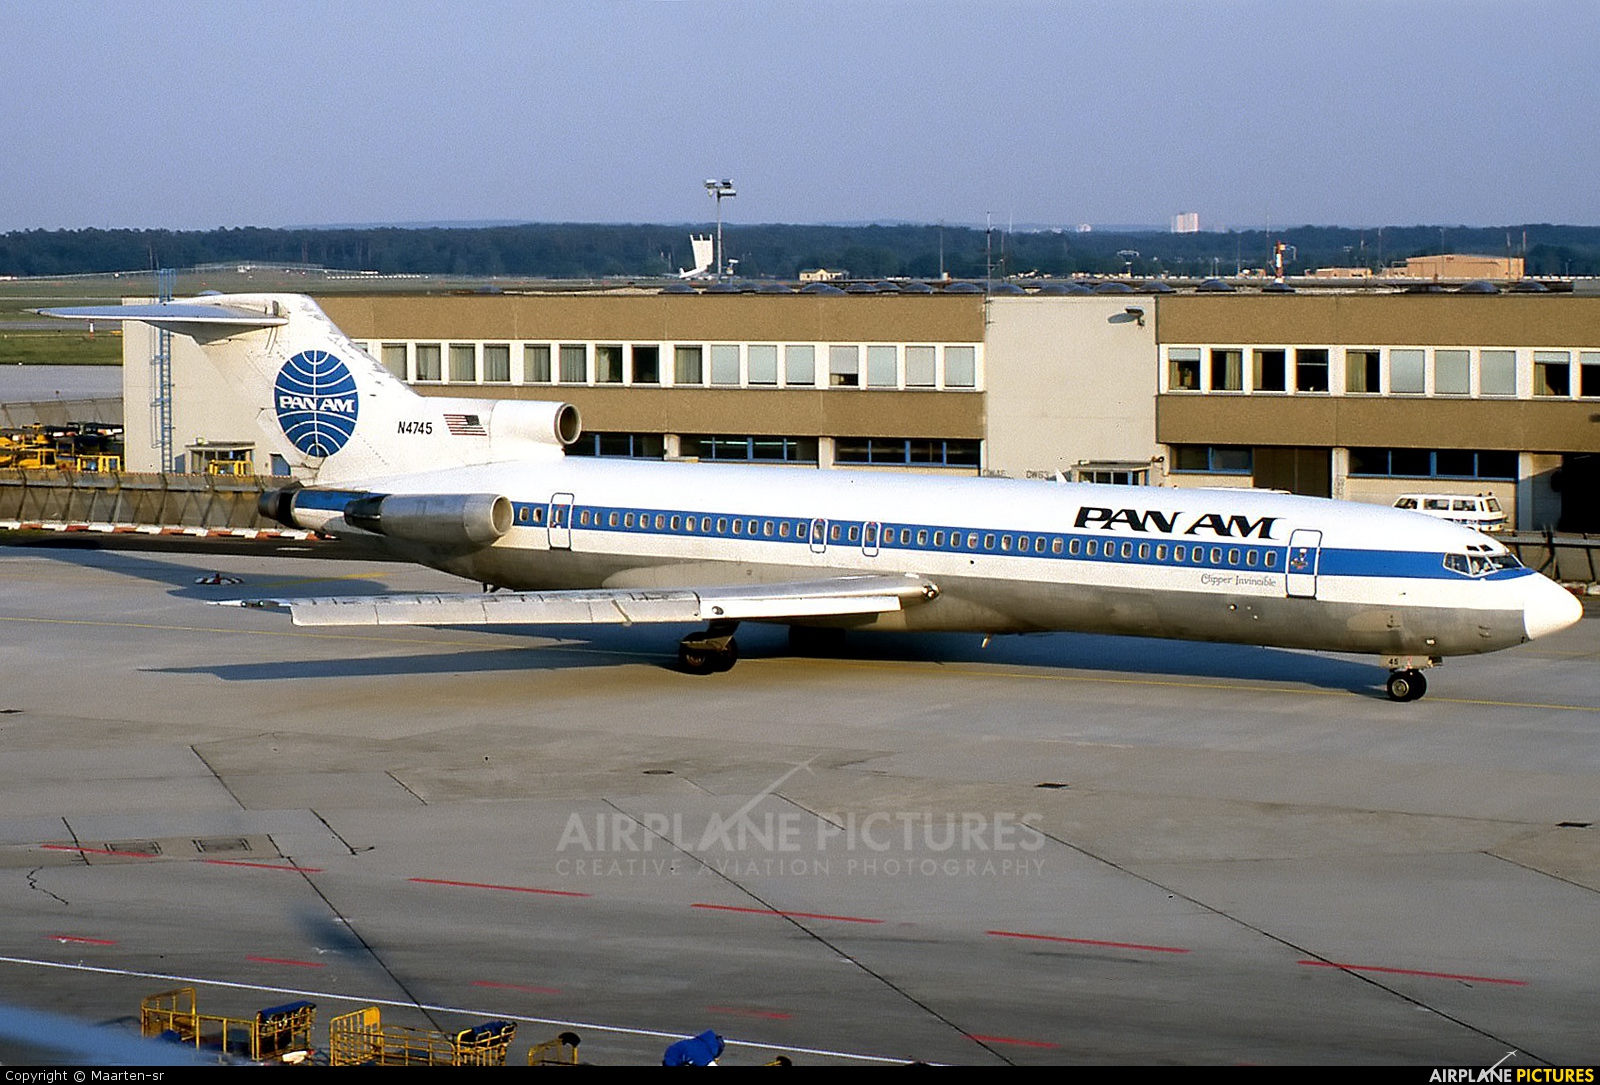 Pan Am N4745 aircraft at Frankfurt